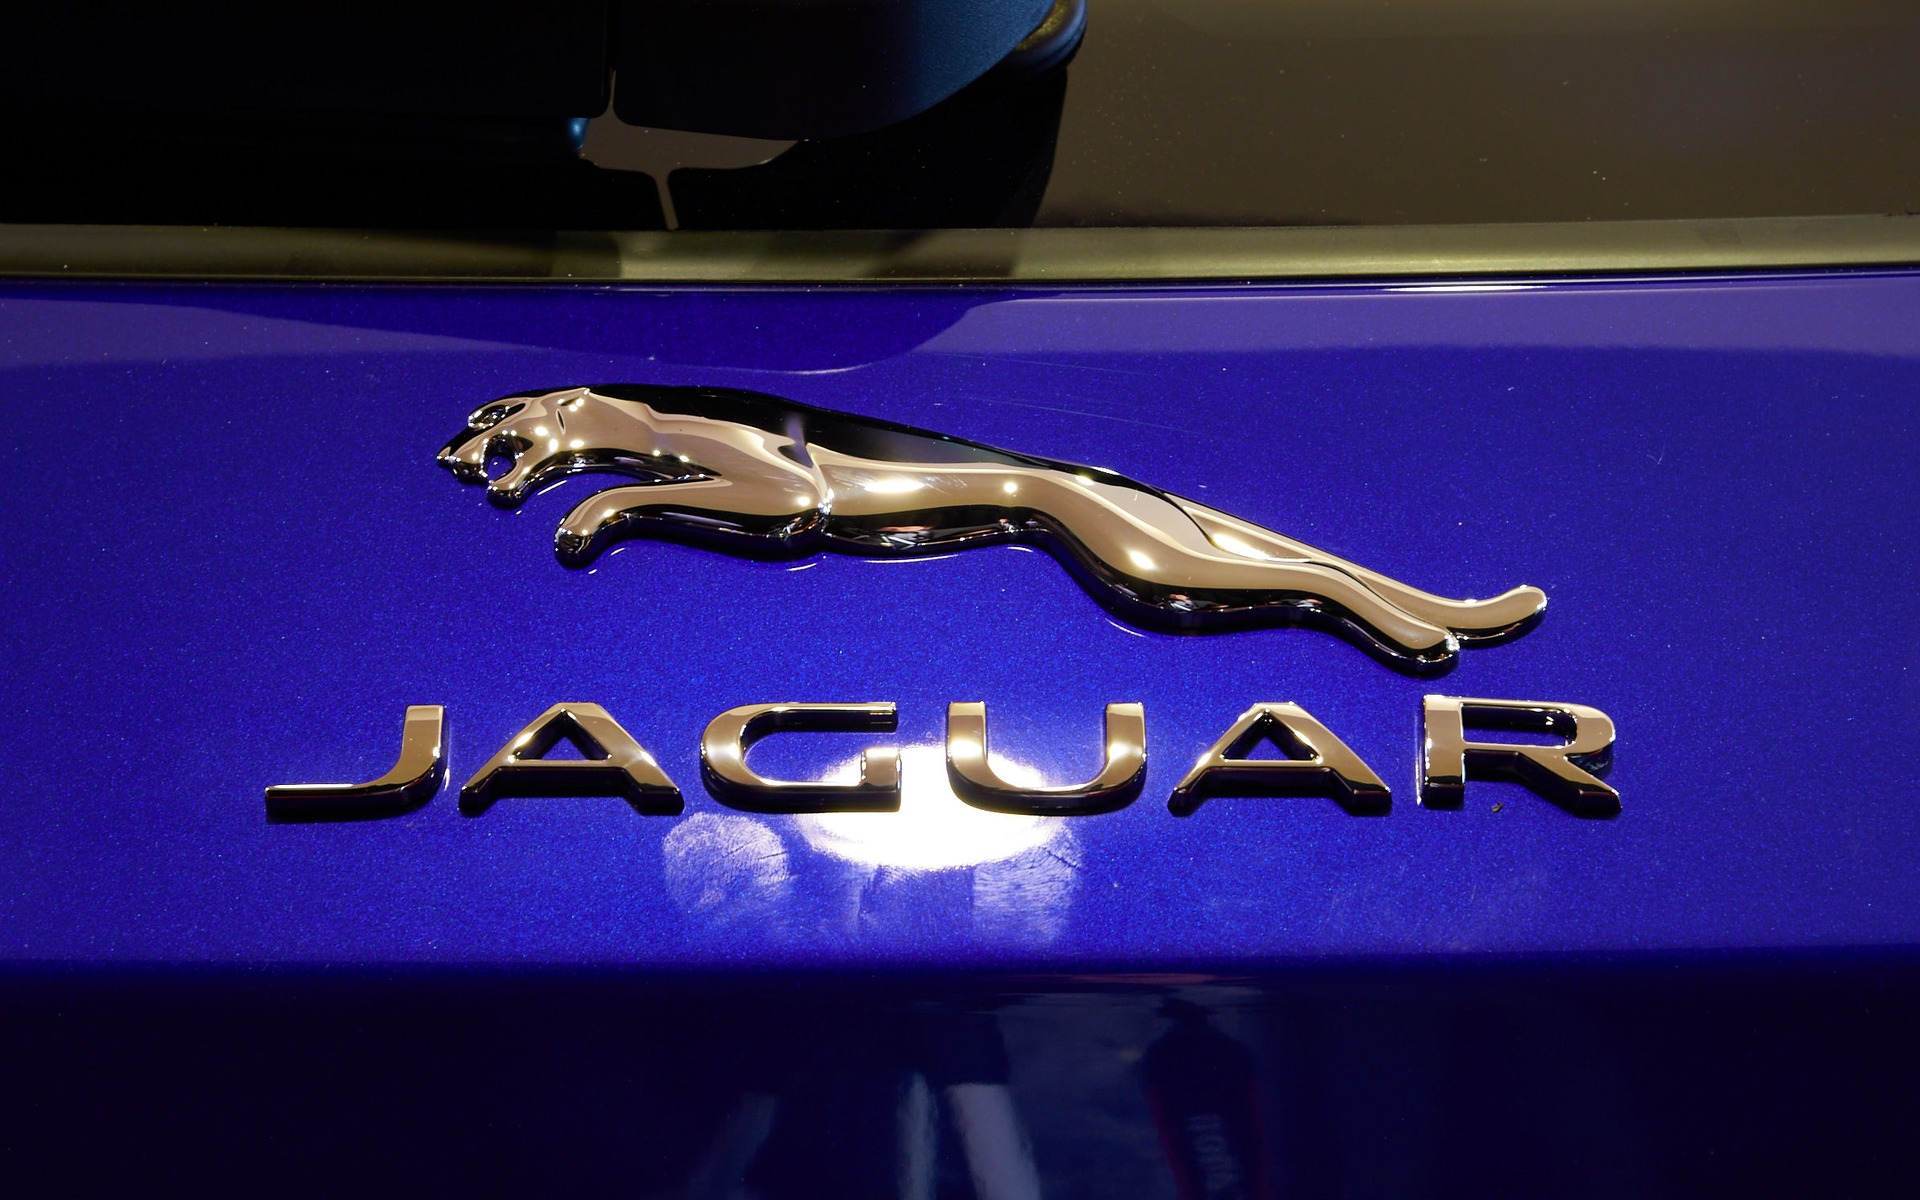 Jaguar F-PACE